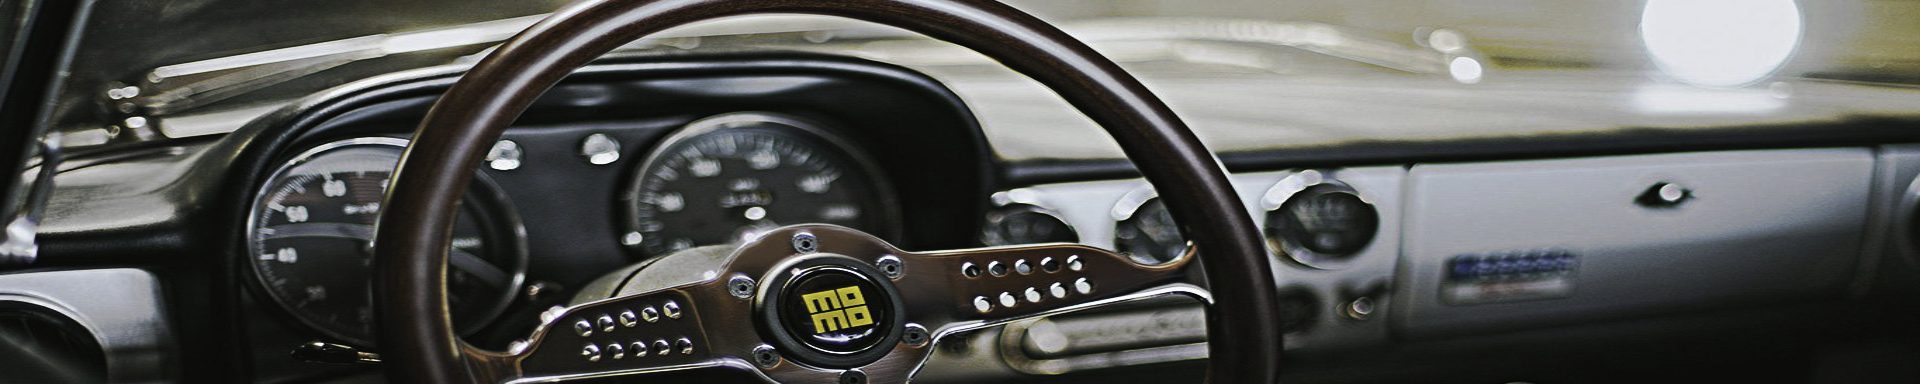 Wood Steering Wheels | GarageAndFab.com | Munro Industries gf-100103051414